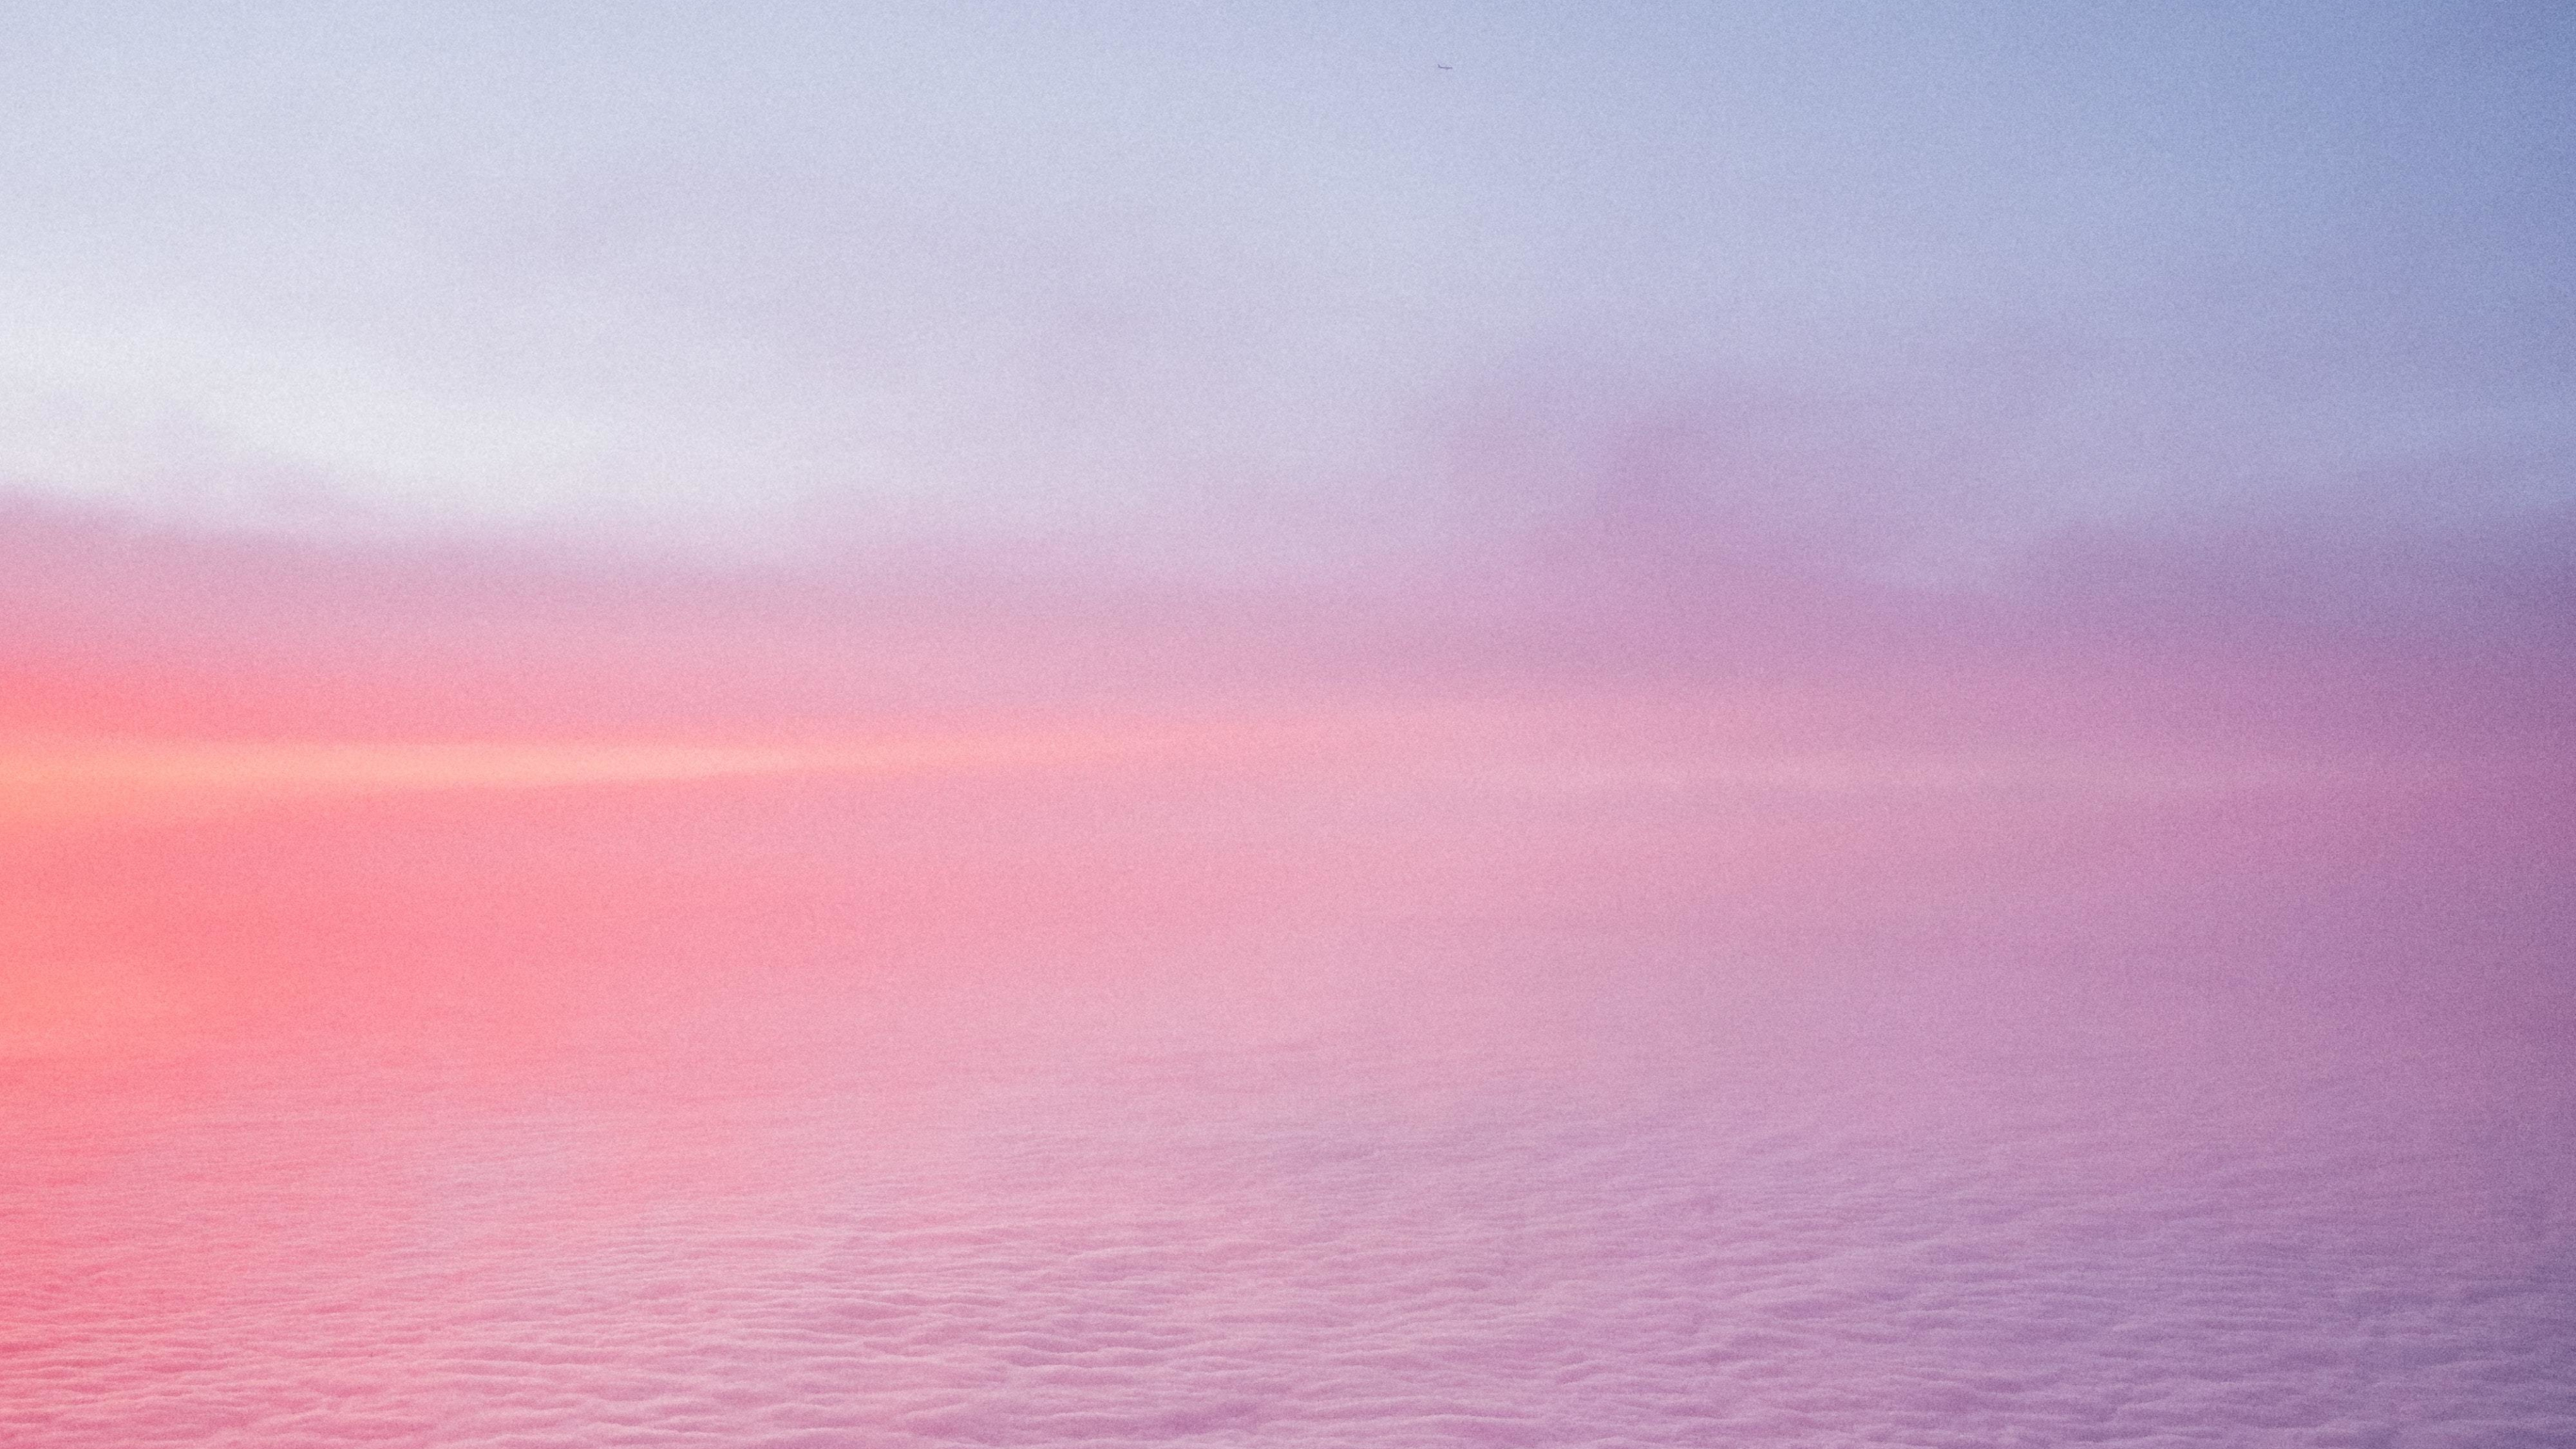 Tải ngay hình nền 4K đám mây trên bầu trời hồng để trải nghiệm cuộc sống một cách đầy màu sắc và tươi mới. Thưởng thức sự kết hợp hoàn hảo giữa màu hồng đầy nữ tính và những đám mây tràn đầy tự do bay lượn. Nhấp chuột ngay để có trải nghiệm thật nhiều niềm vui mới.